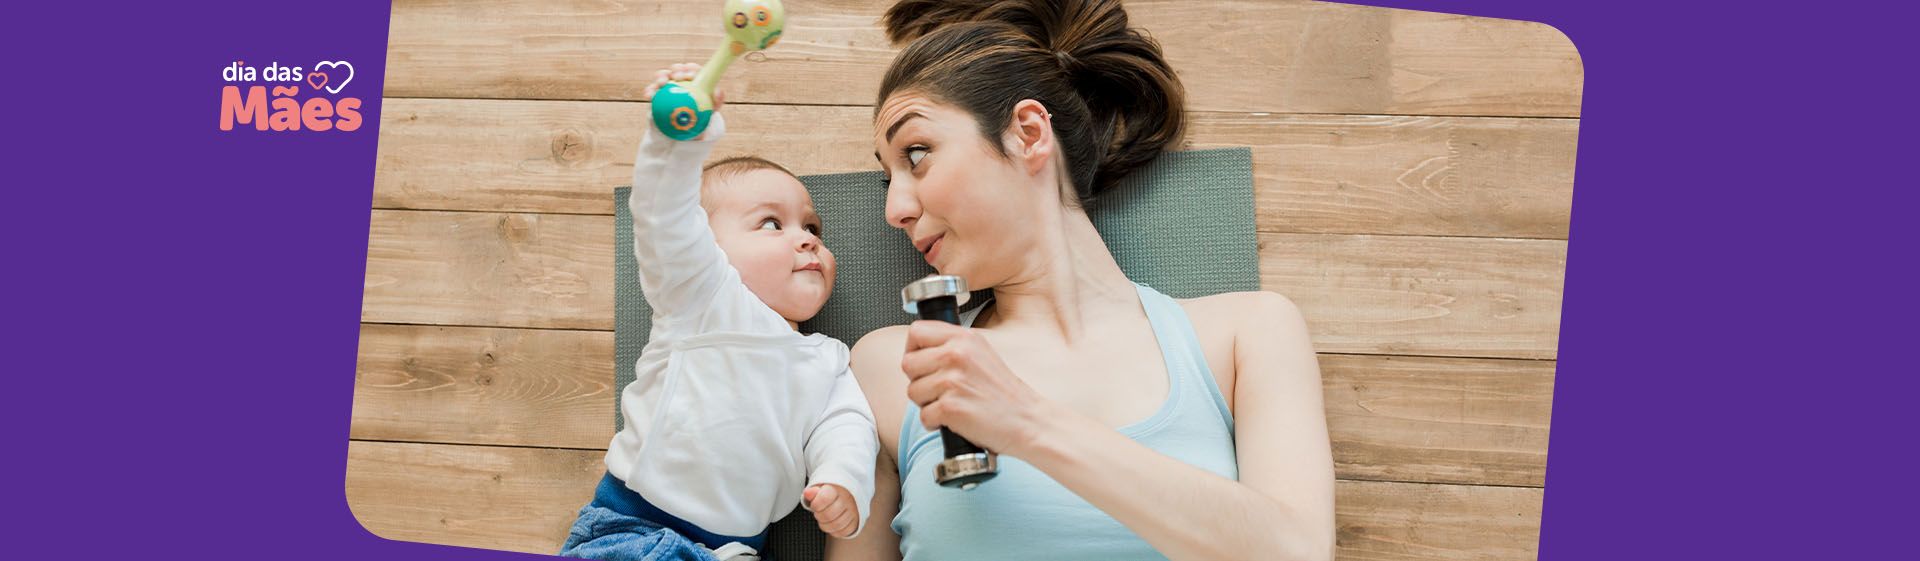 Dia das Mães: 15 opções de presente para mãe fitness